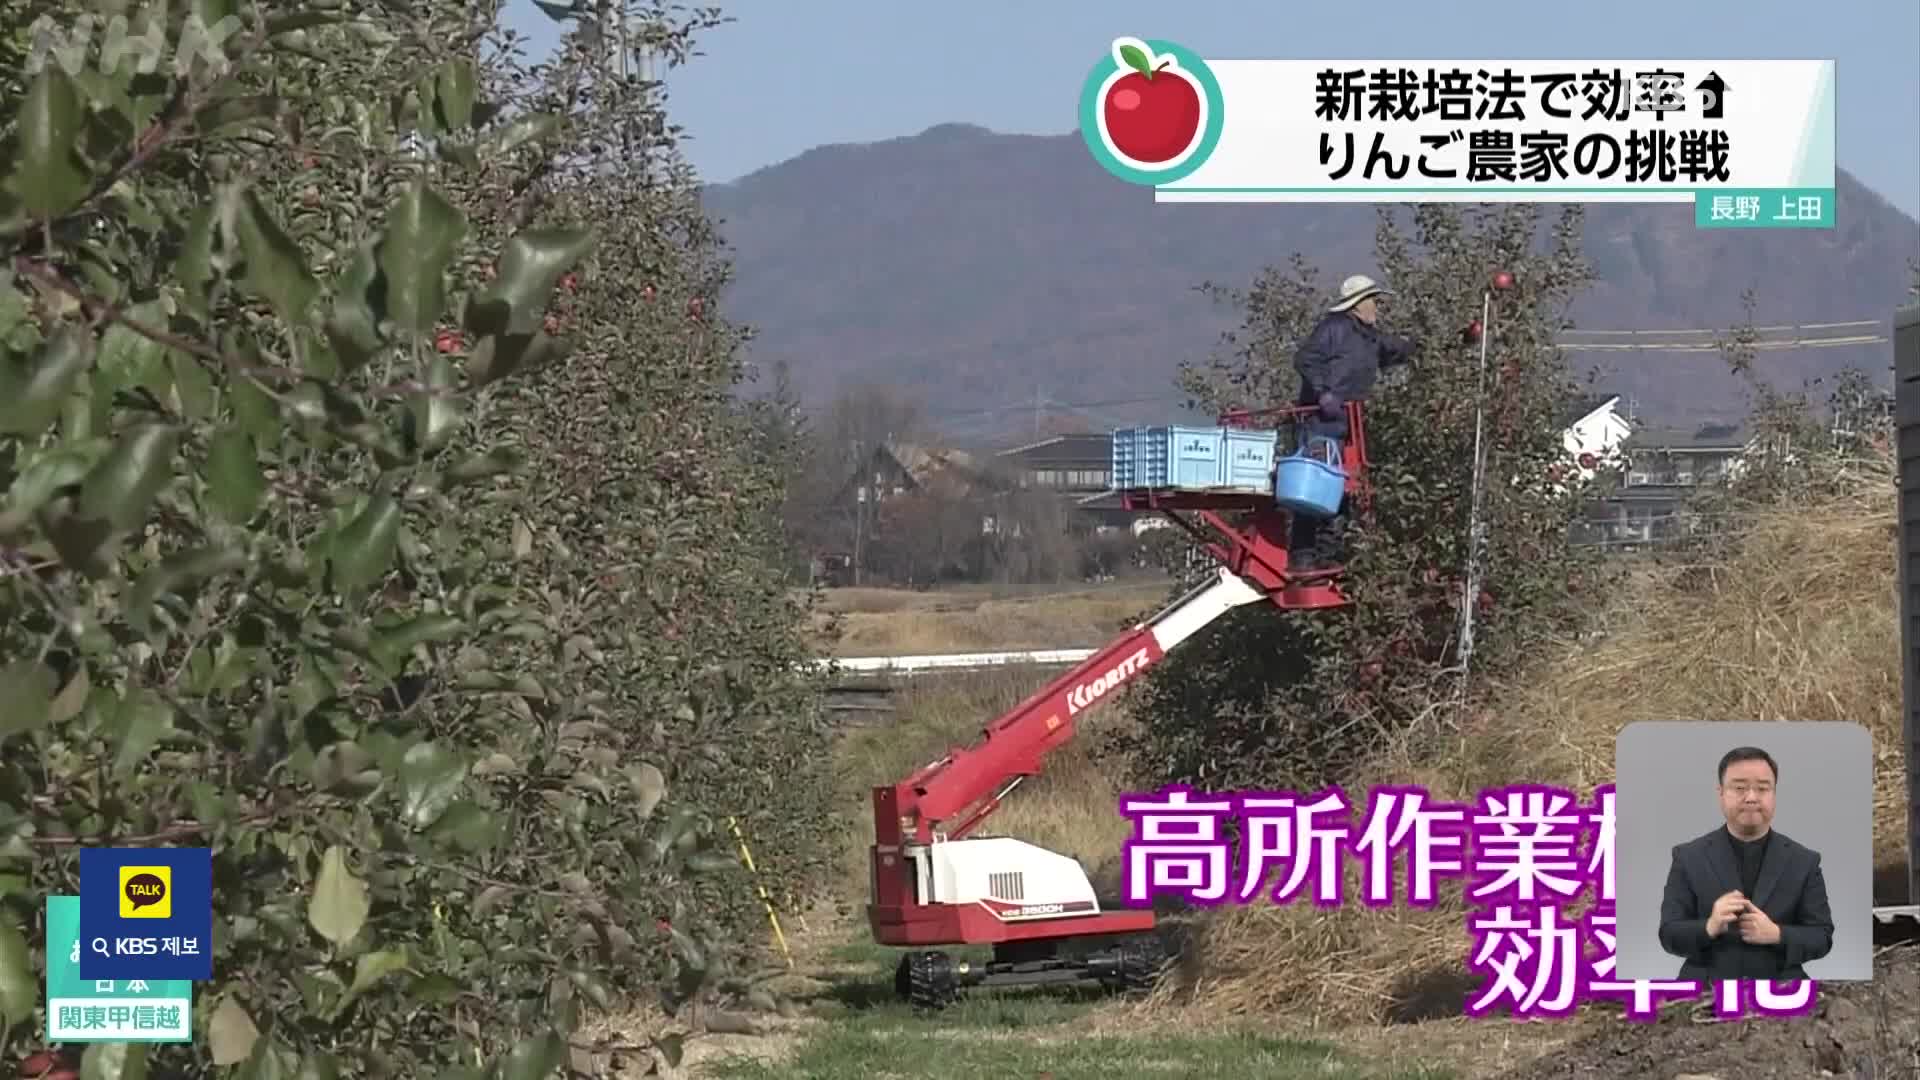 일본, ‘고밀 재배’로 수확량도 늘고 농사도 쉬워져